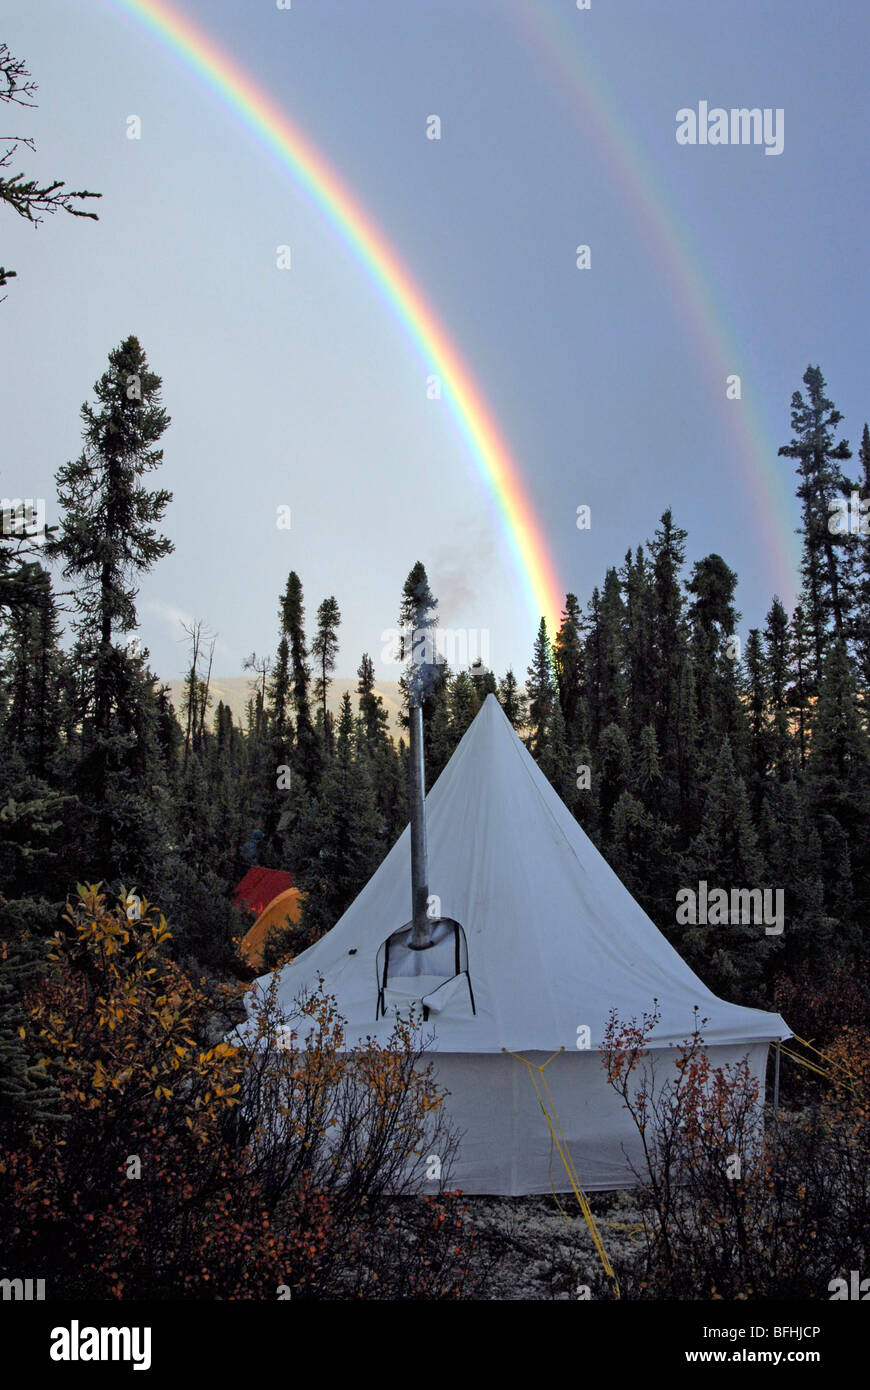 Doppelter Regenbogen über Zelt camping-Platz. Yukon Territorium, Kanada. Stockfoto